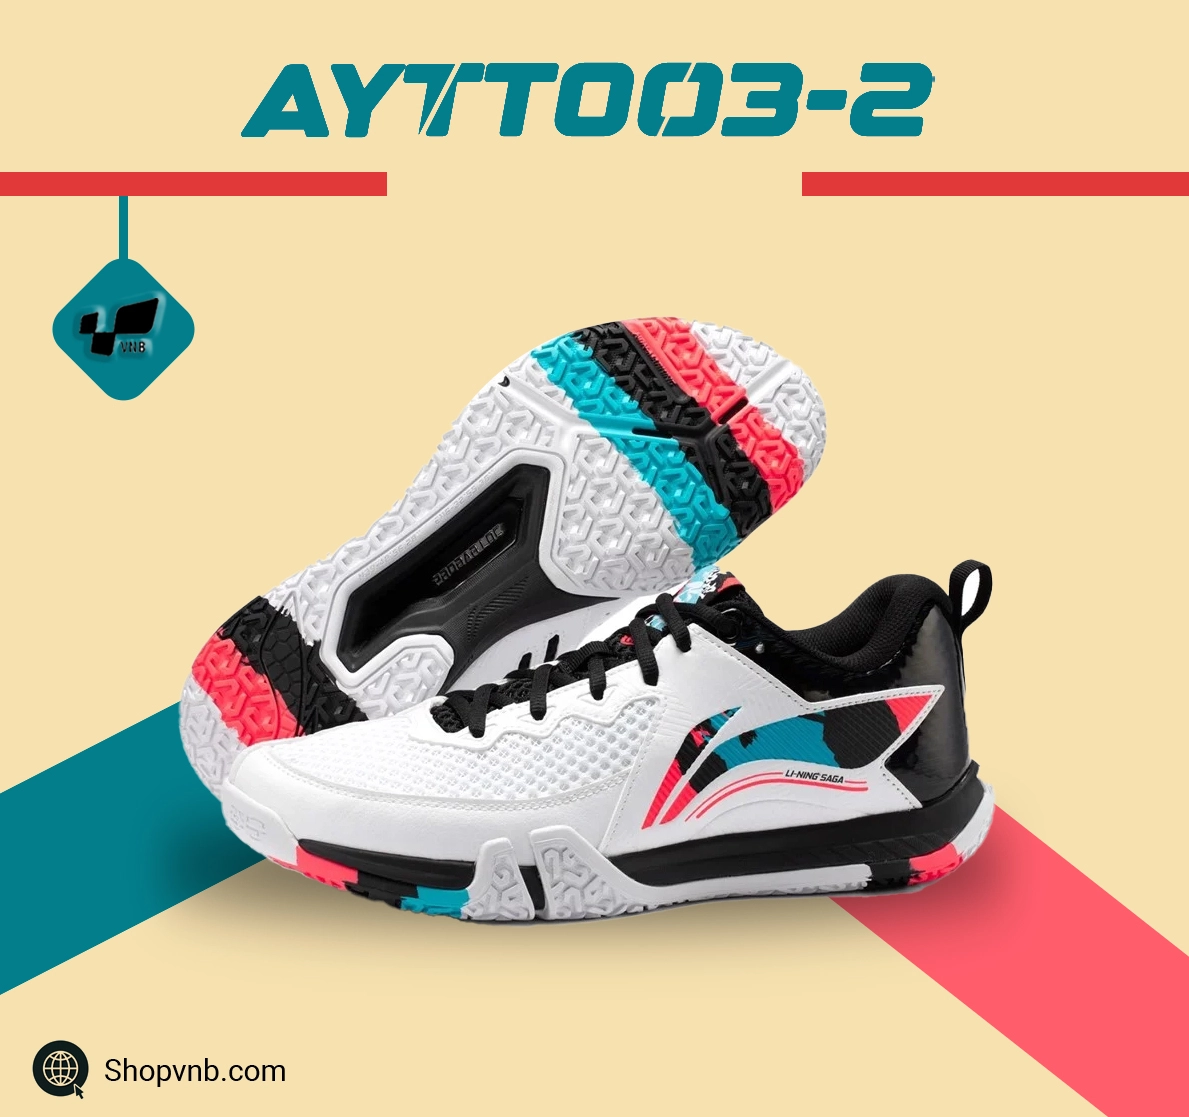 Giày cầu lông Lining AYTT003-2 chính hãng